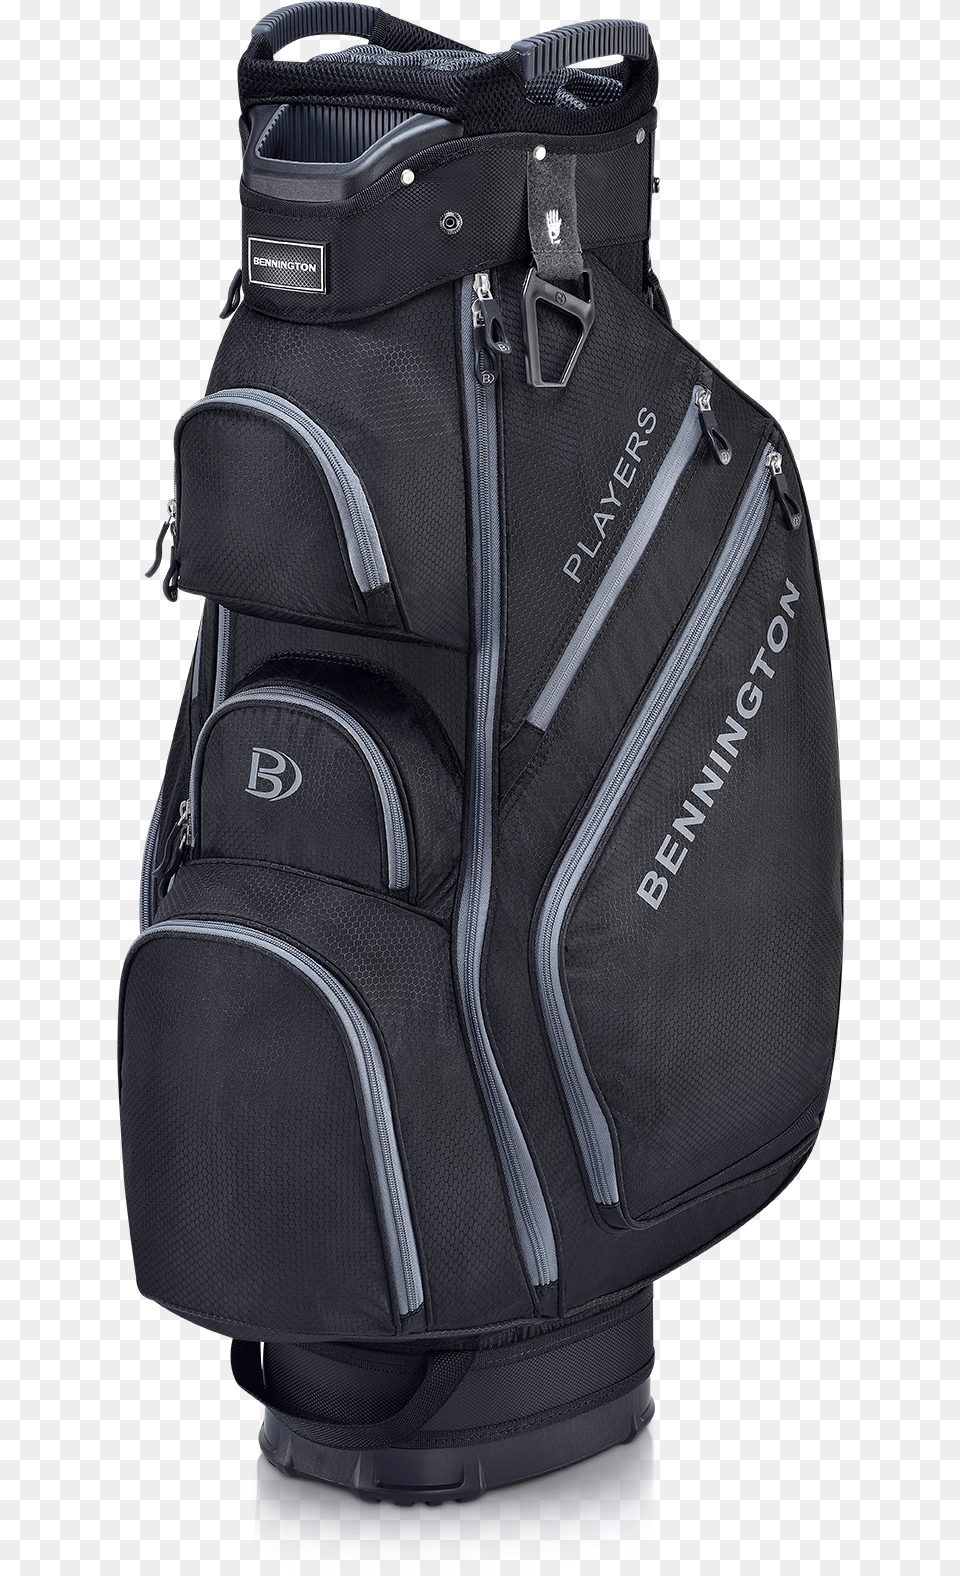 Bennington Golf Bag, Backpack Png Image